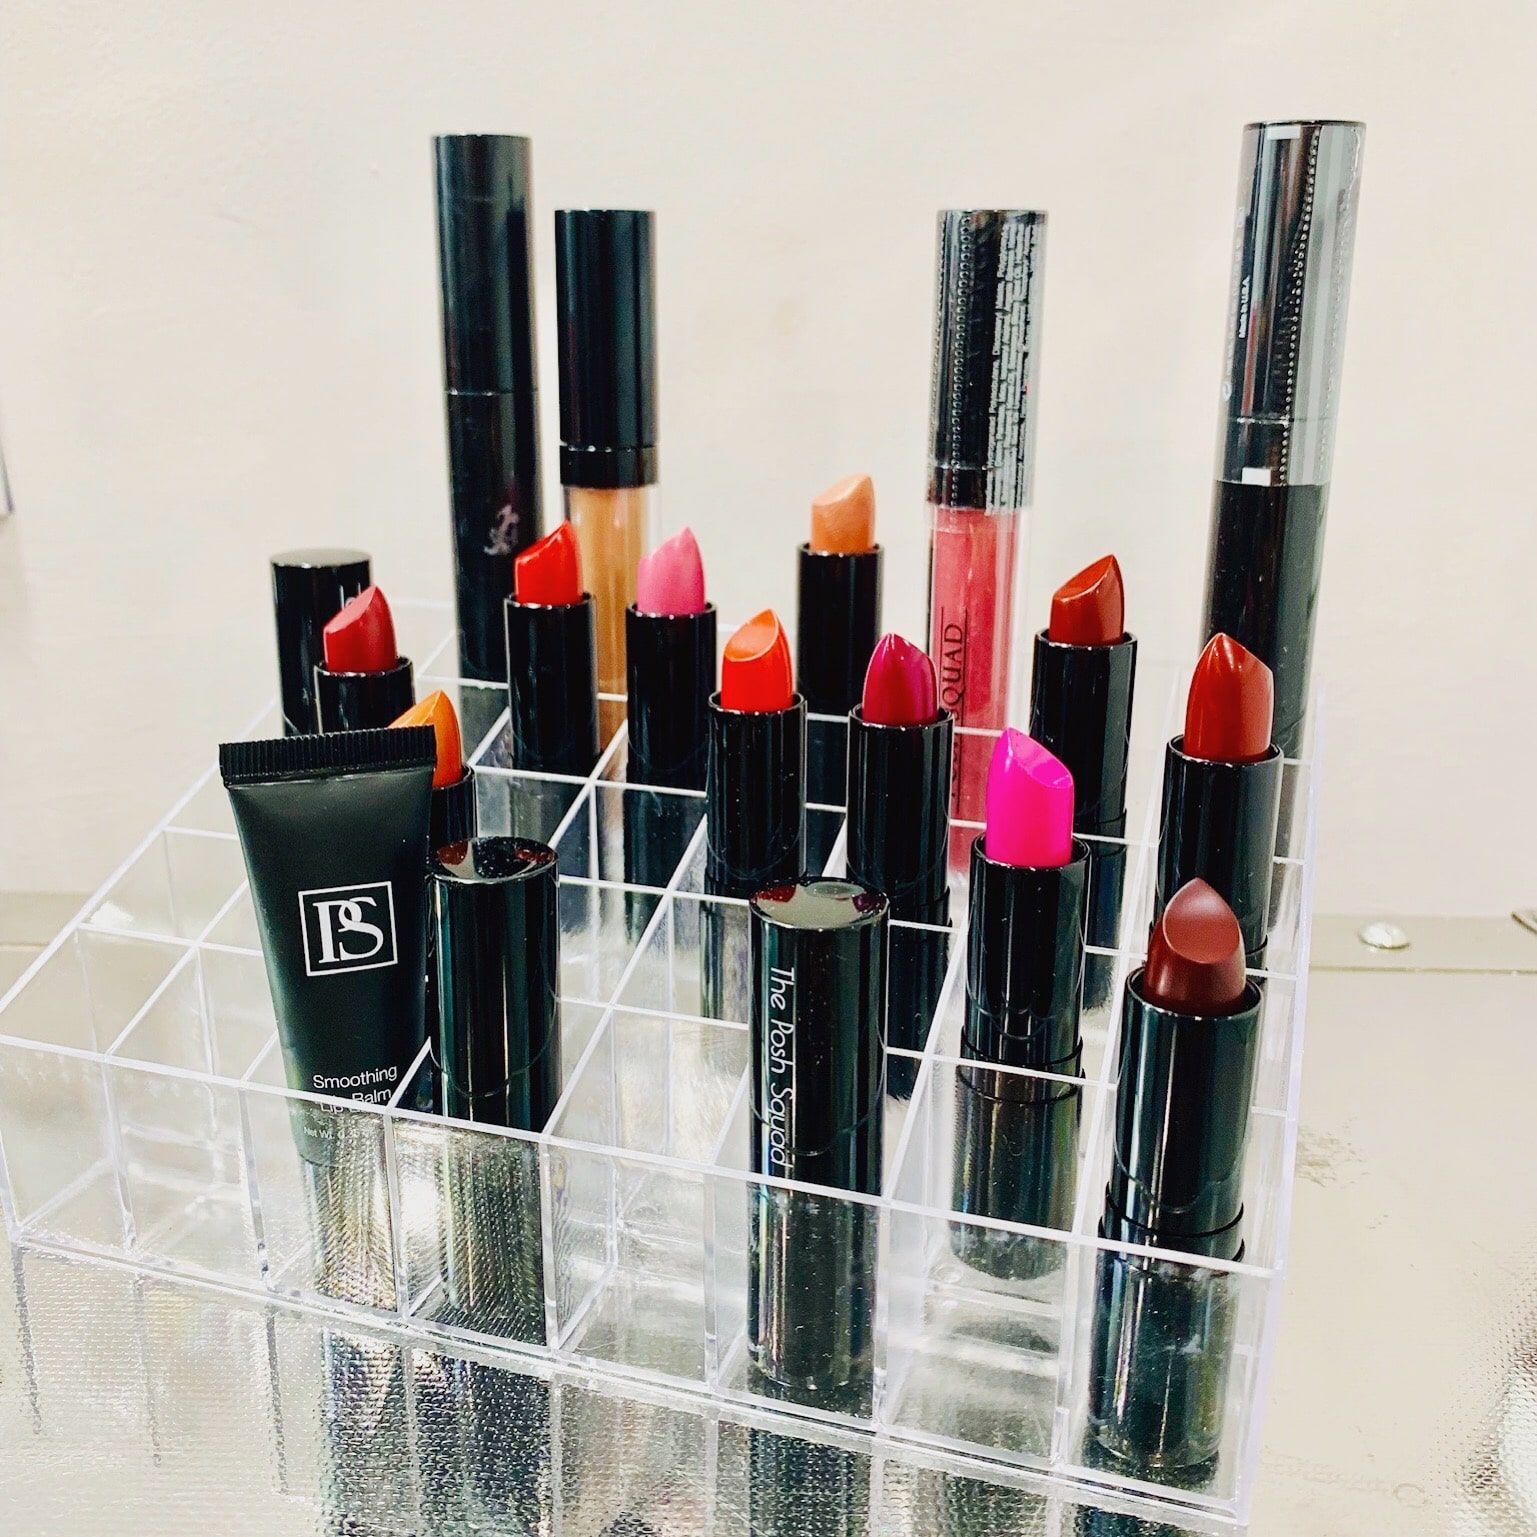 718 beauty bar lipstick